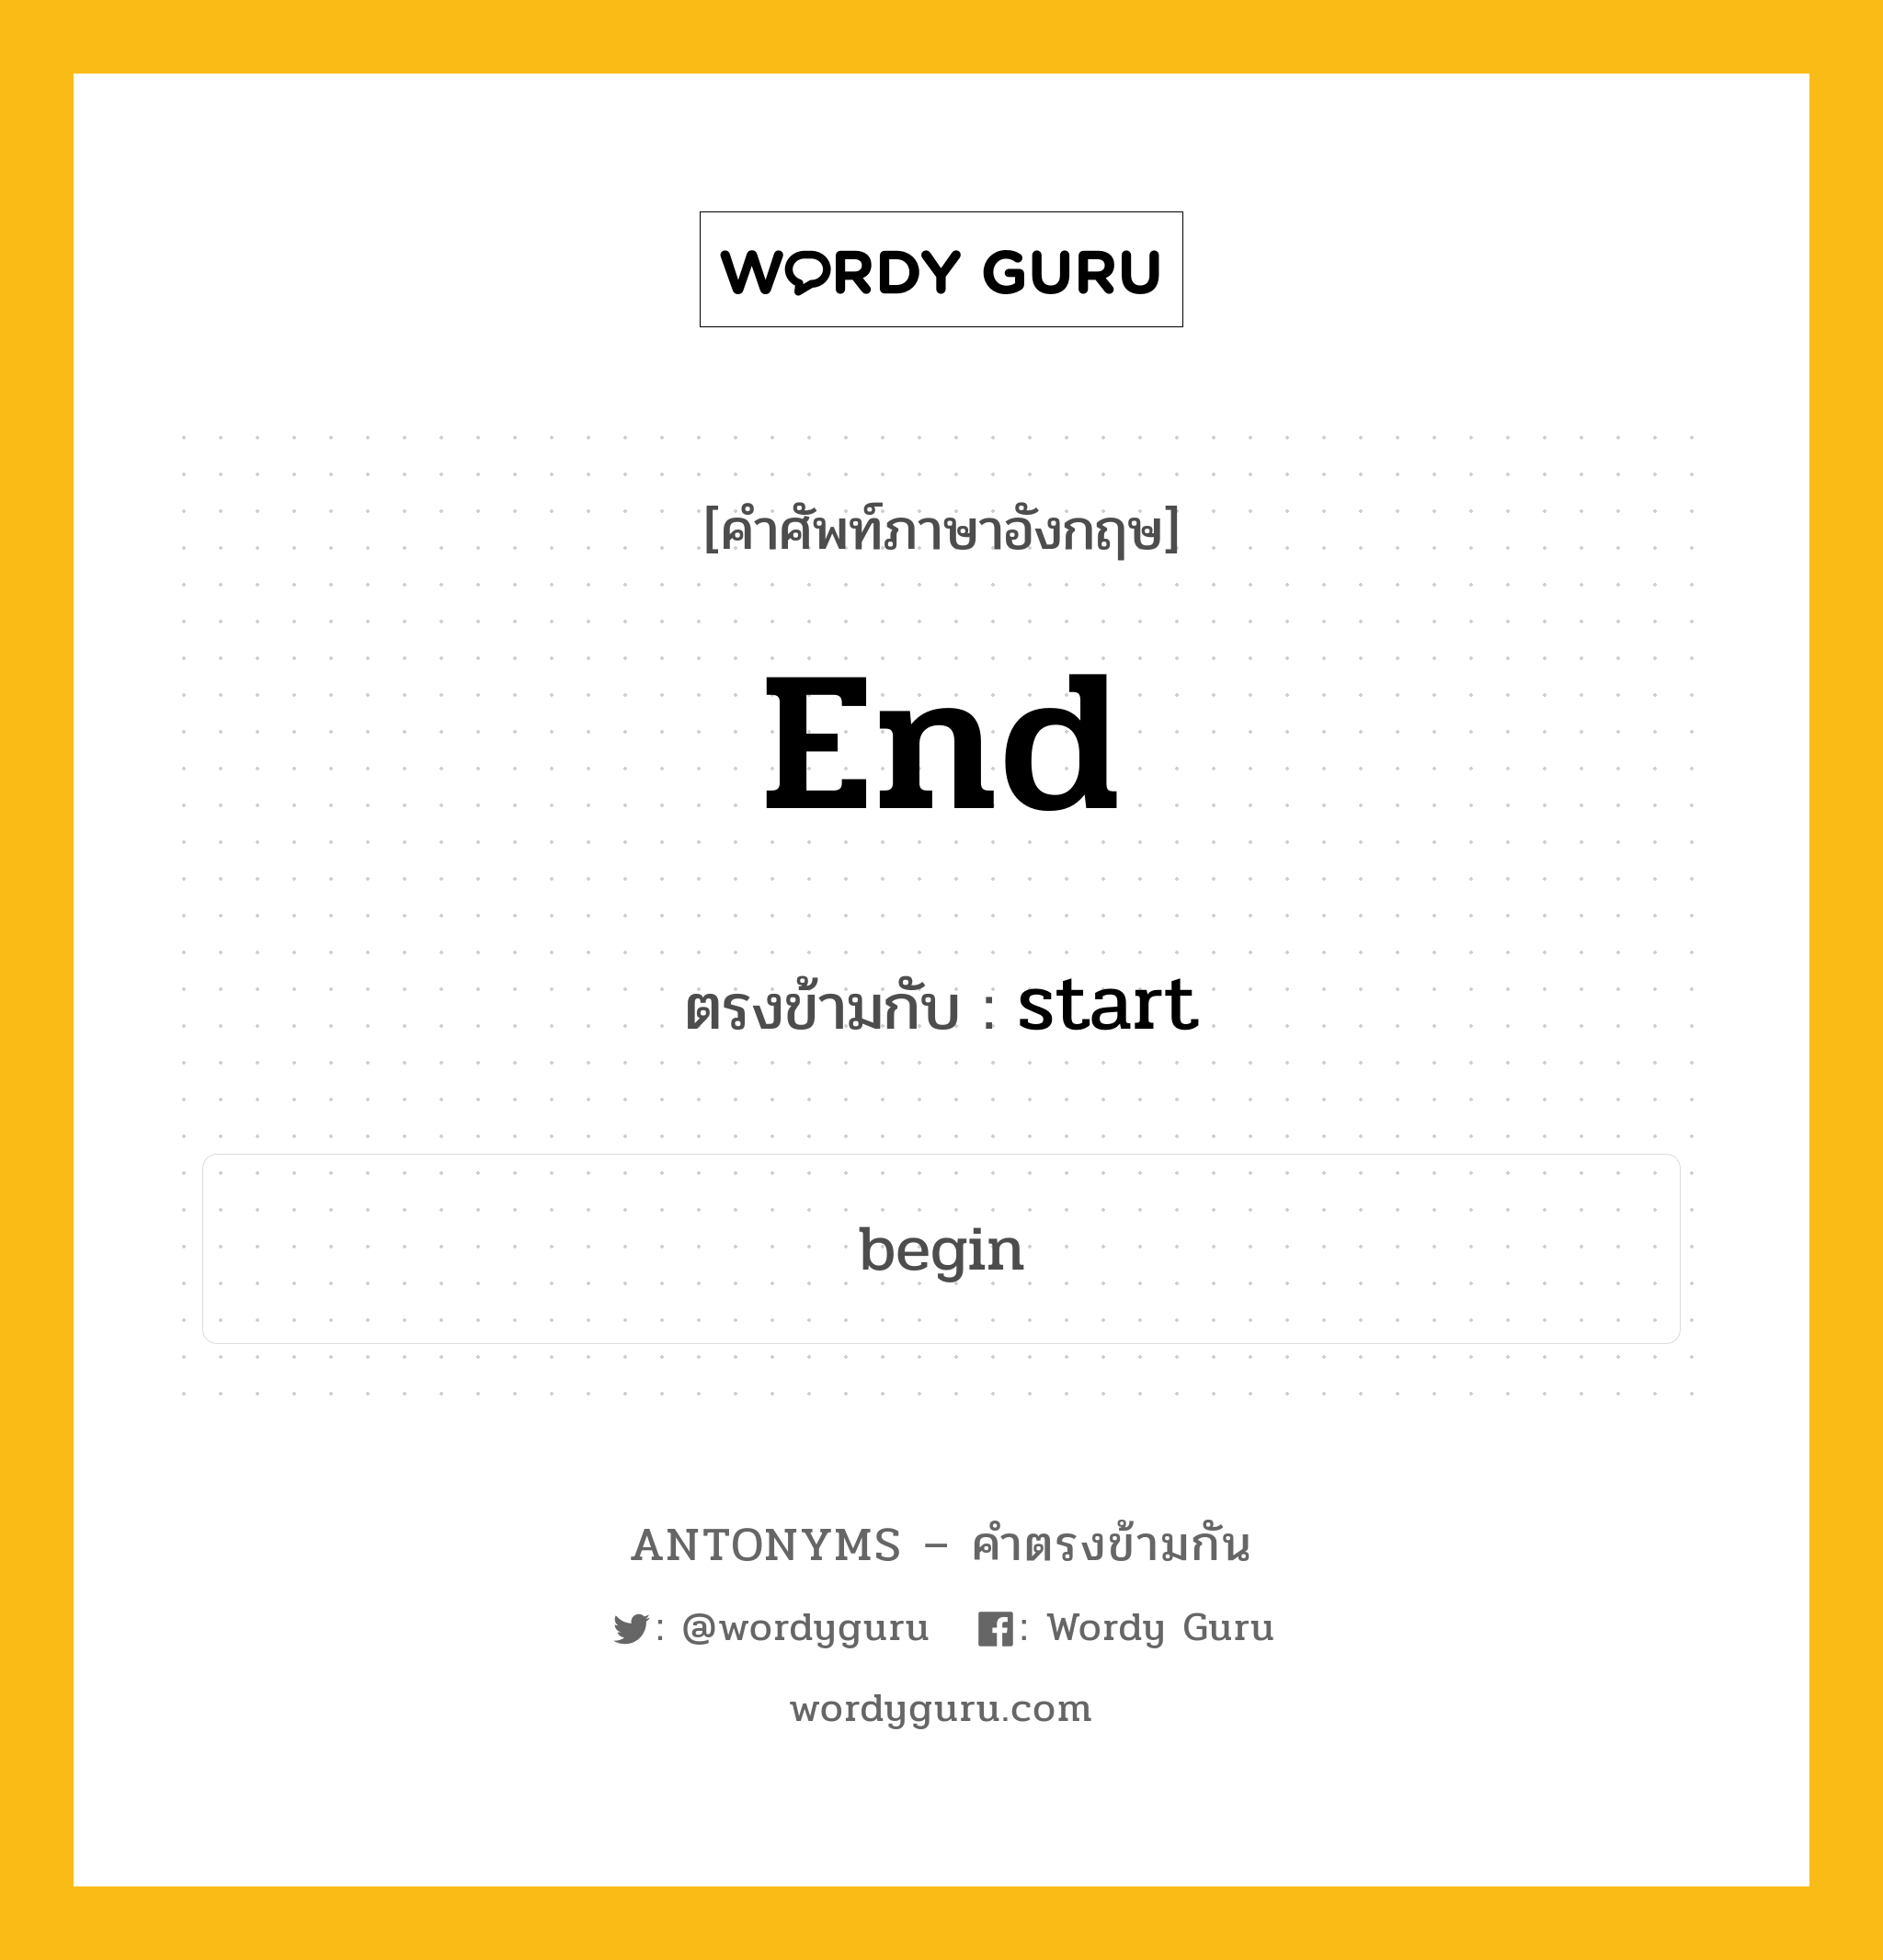 end เป็นคำตรงข้ามกับคำไหนบ้าง?, คำศัพท์ภาษาอังกฤษ end ตรงข้ามกับ start หมวด start